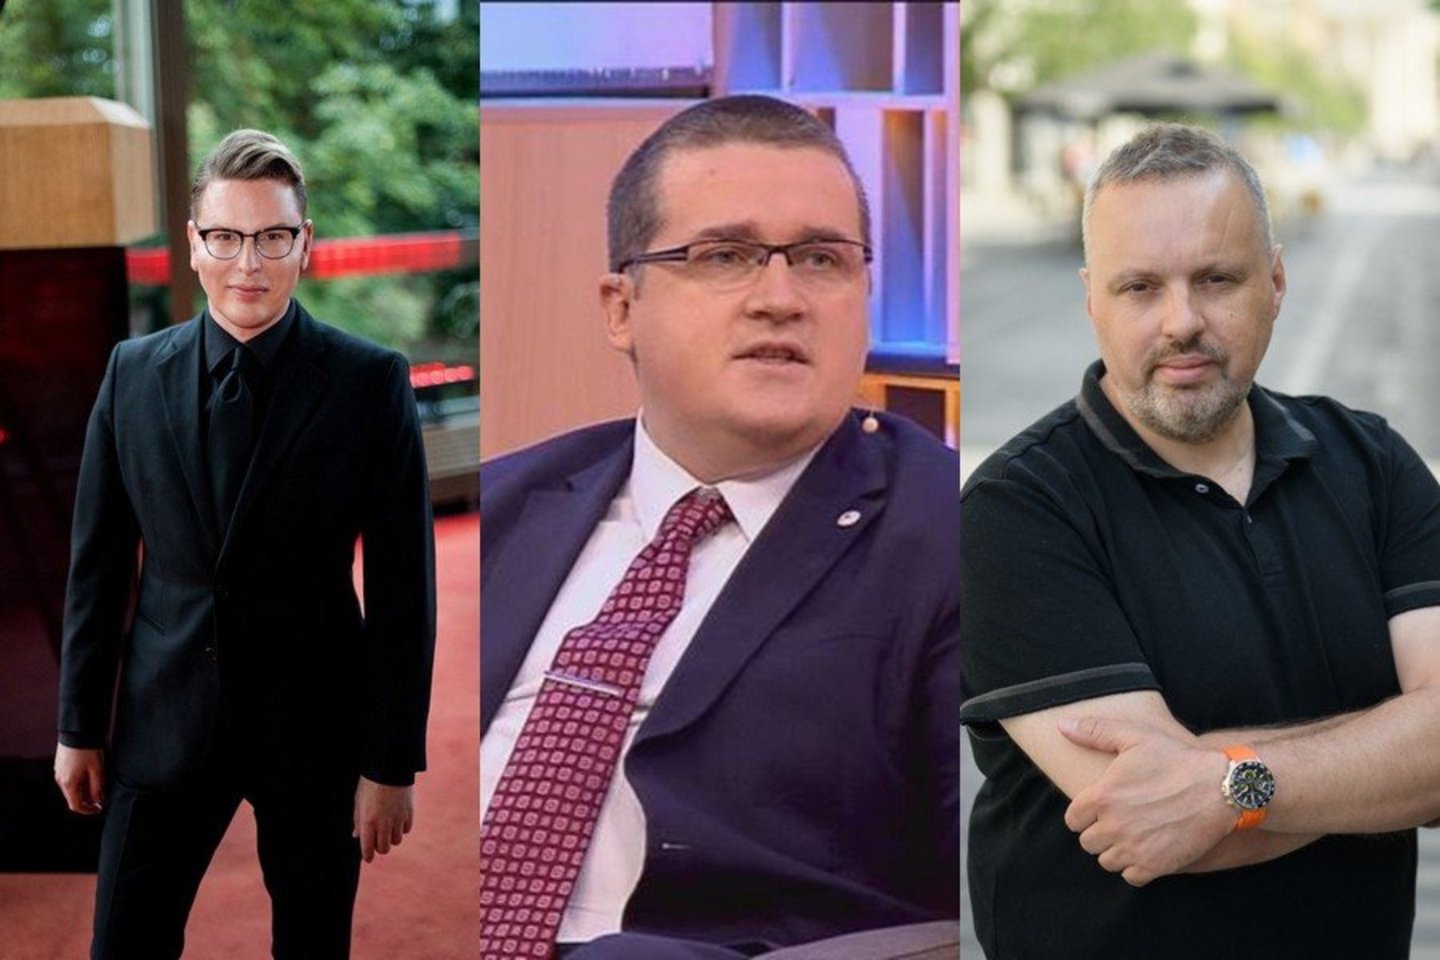  Saugirdas Vaitulionis, Skirmantas Malinauskas ir Andrius Užkalnis.